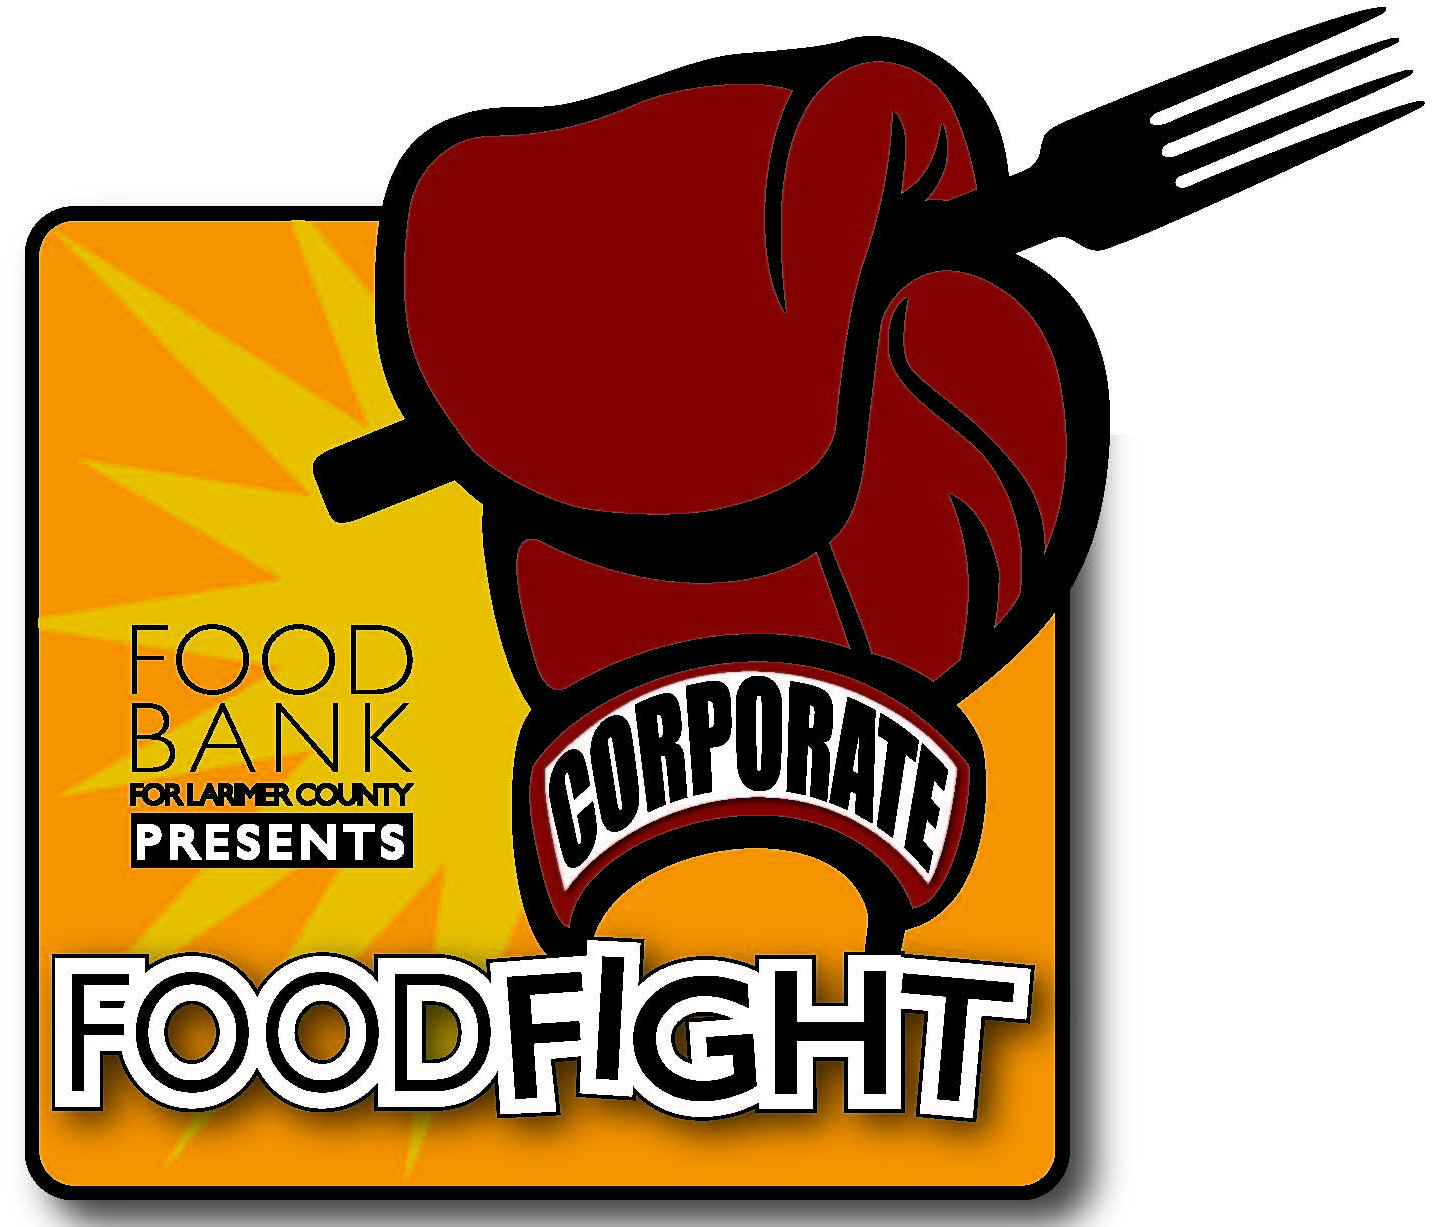 Corporate Food Fight